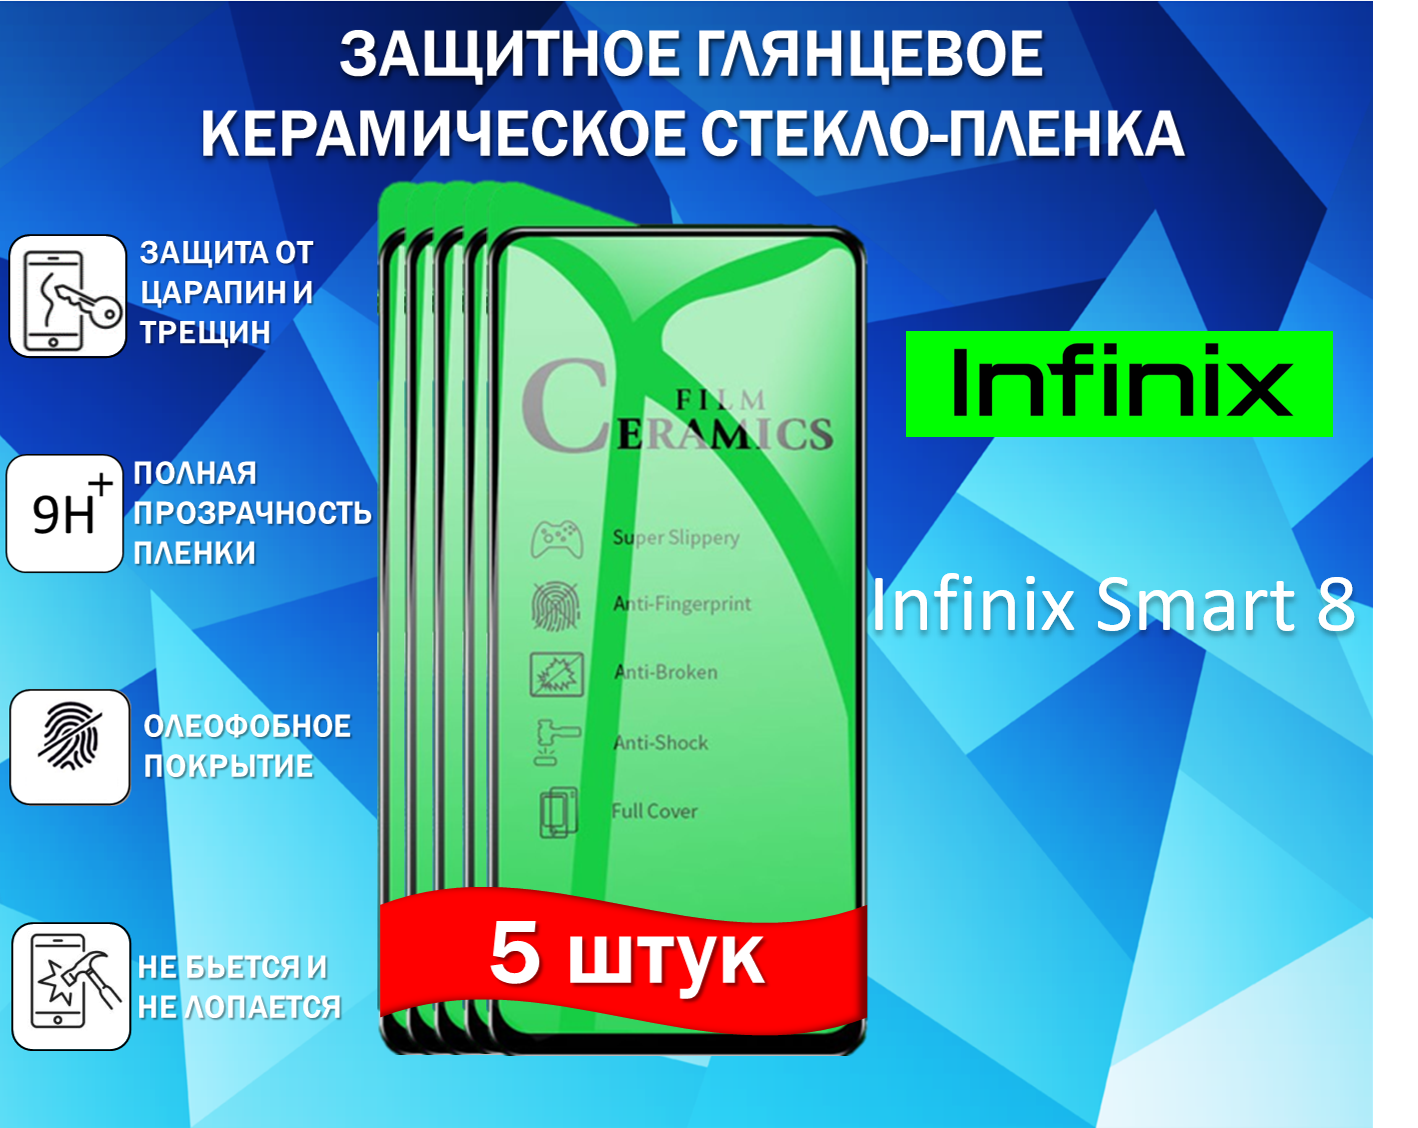 Защитное стекло / Пленка для Infinix Smart 8 / Инфиникс Смарт 8 ( Комплект 5 Штуки ) Керамическая Глянцевая Full Glue